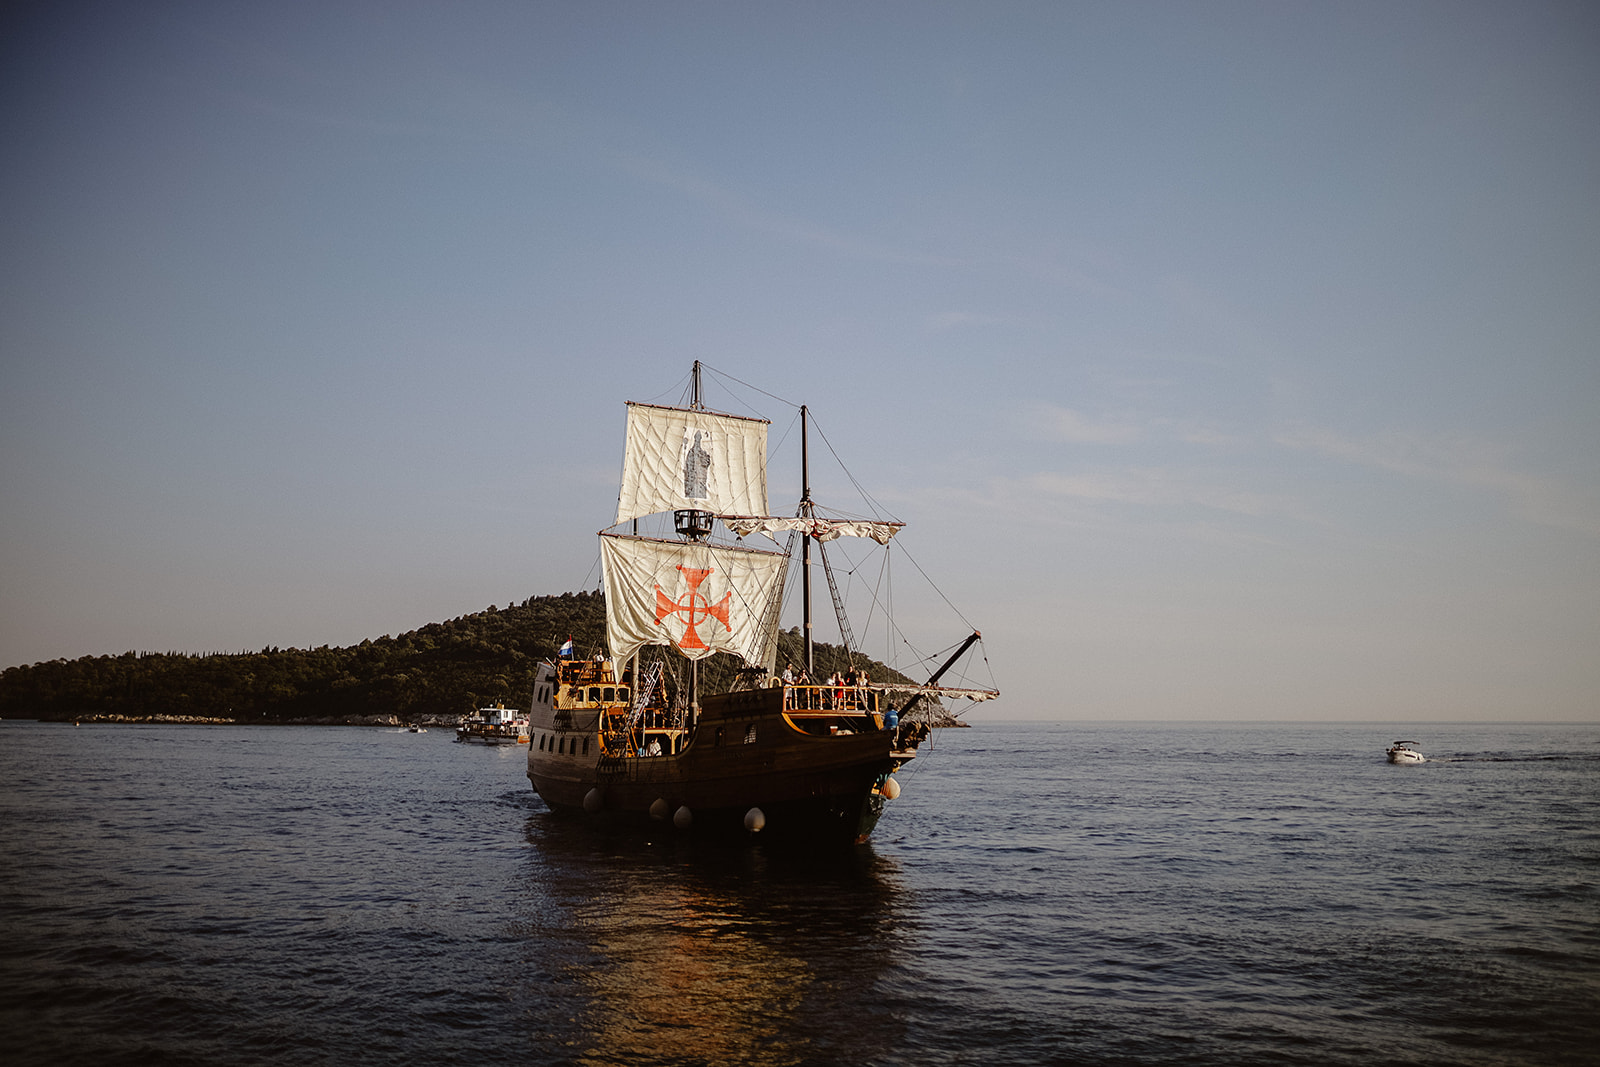 Sunset beach Dubrovnik wedding ideas 163 | Croatia Elopement Photographer and Videographer